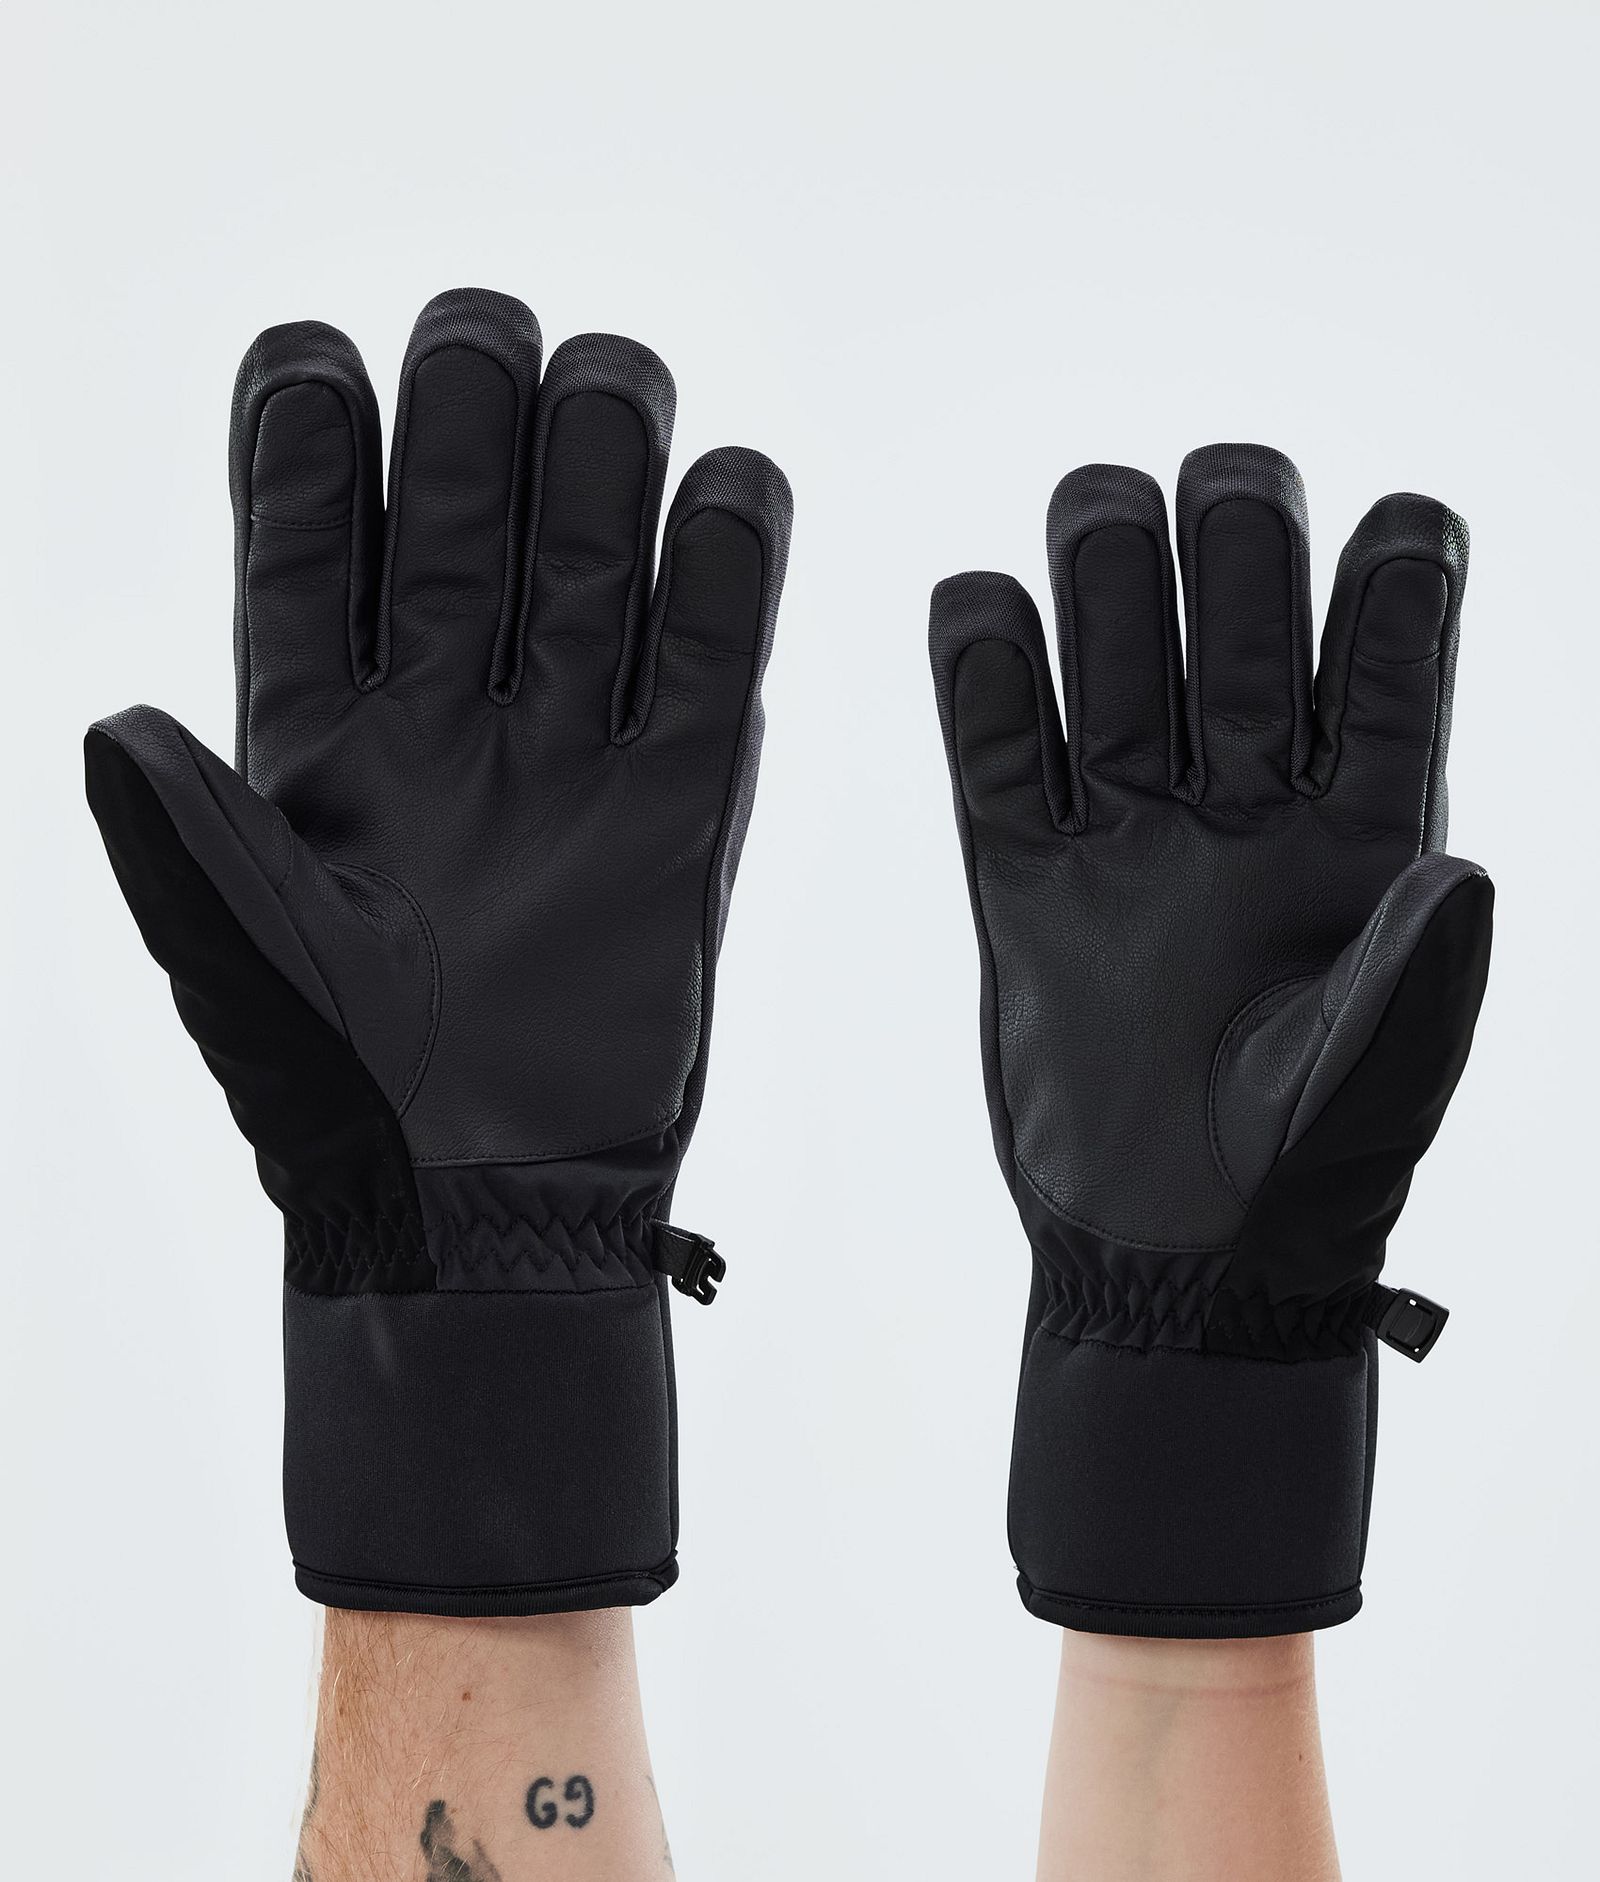 Kilo 2022 Ski Gloves Black